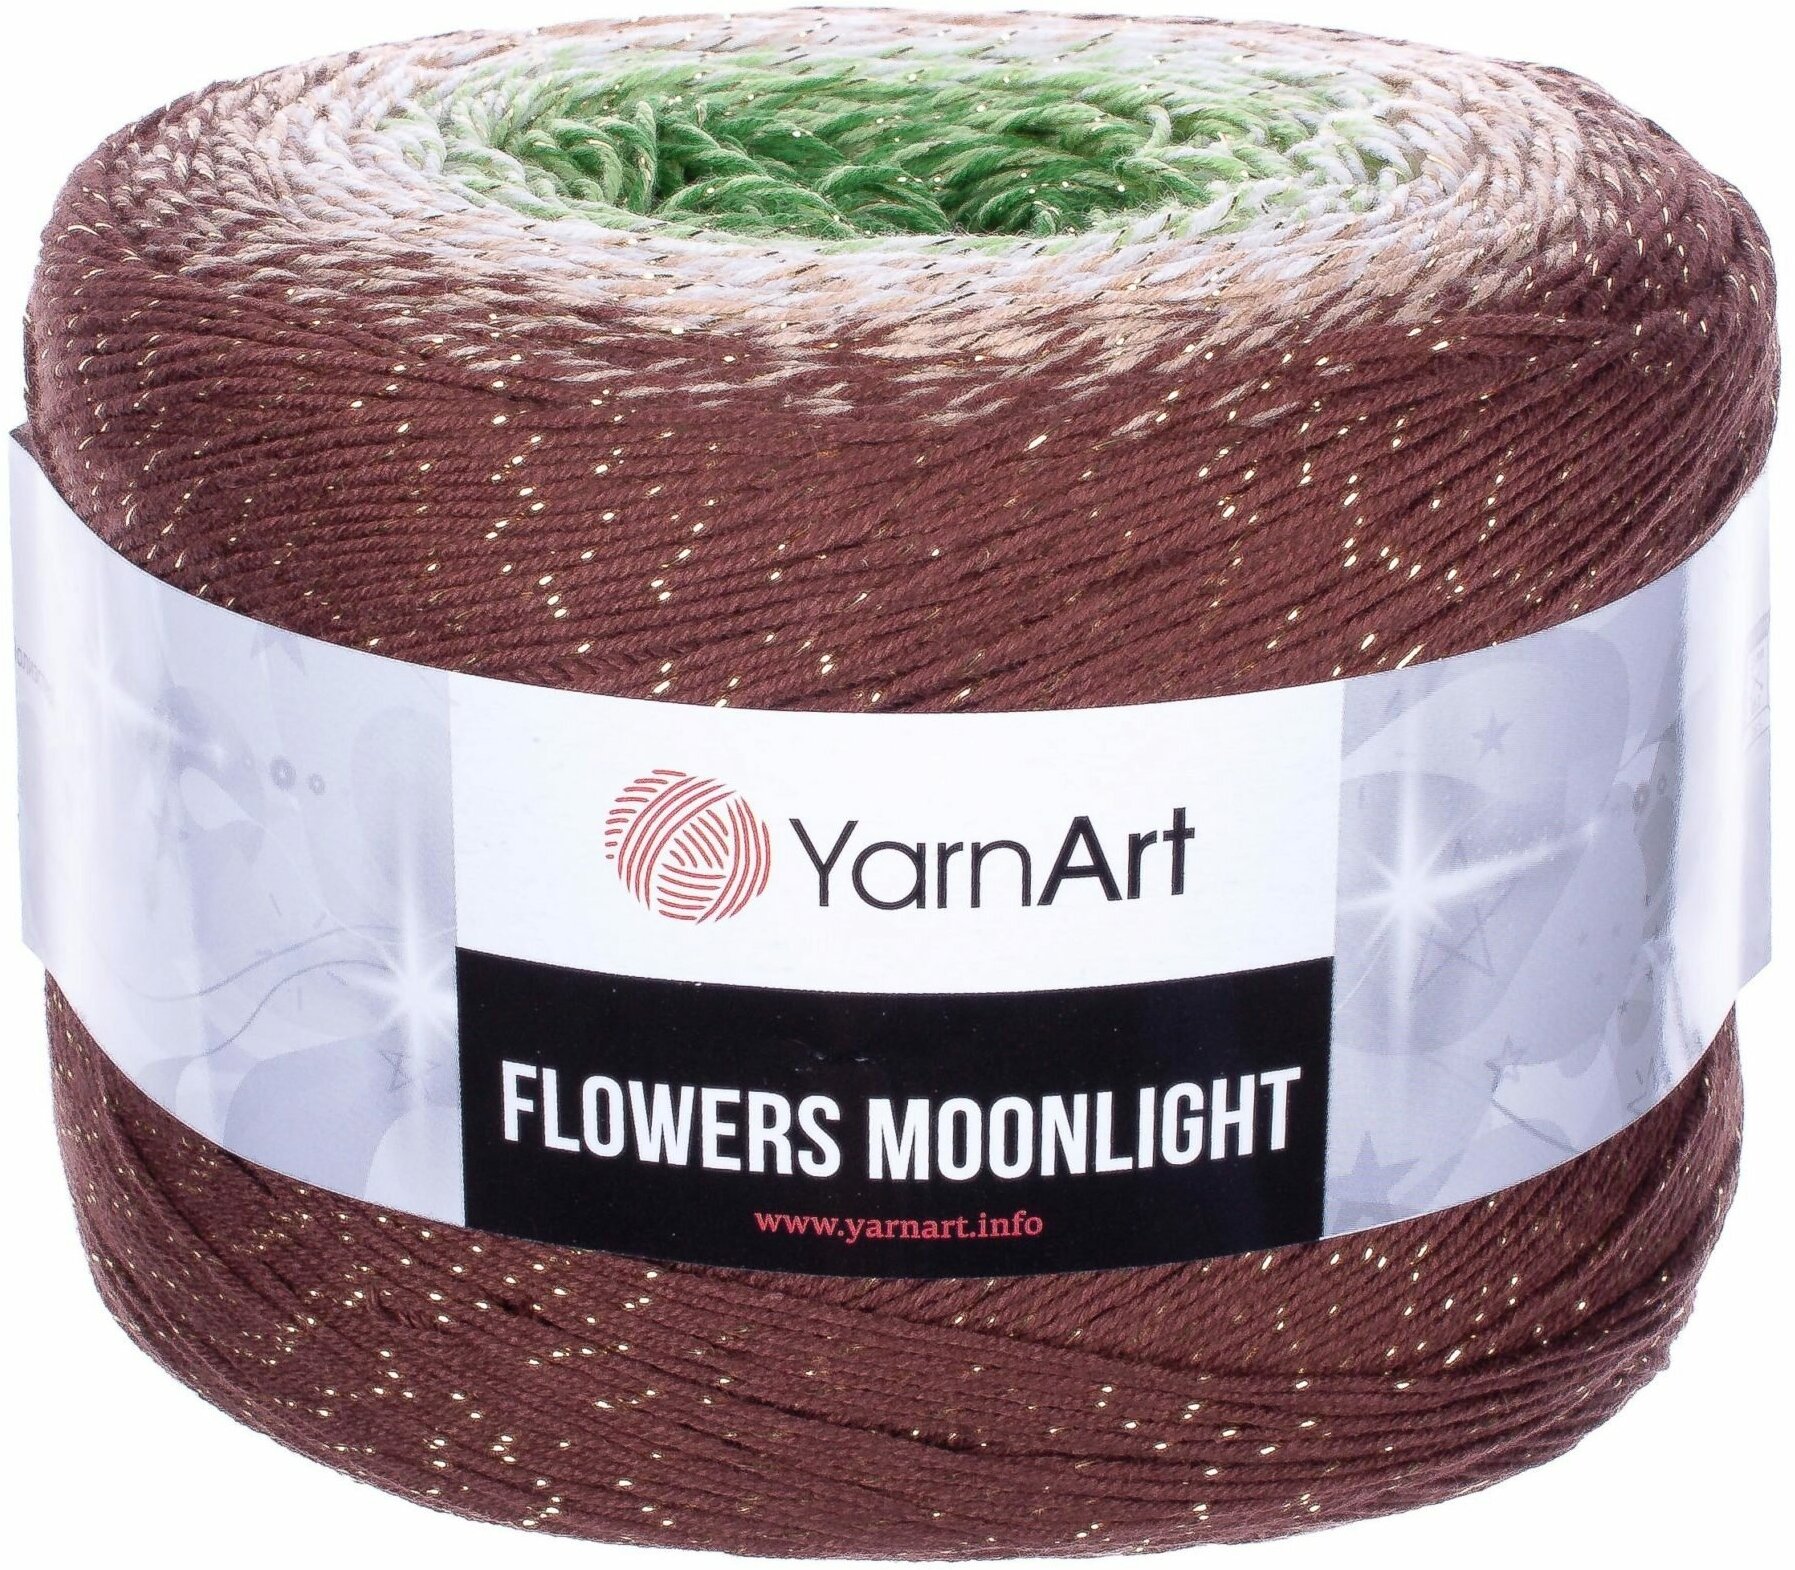 Пряжа YarnArt Flowers Moonlight коричневый-св. беж-зеленый (3272), 53%хлопок/43%акрил/4%металлик, 1000м, 260г, 1шт